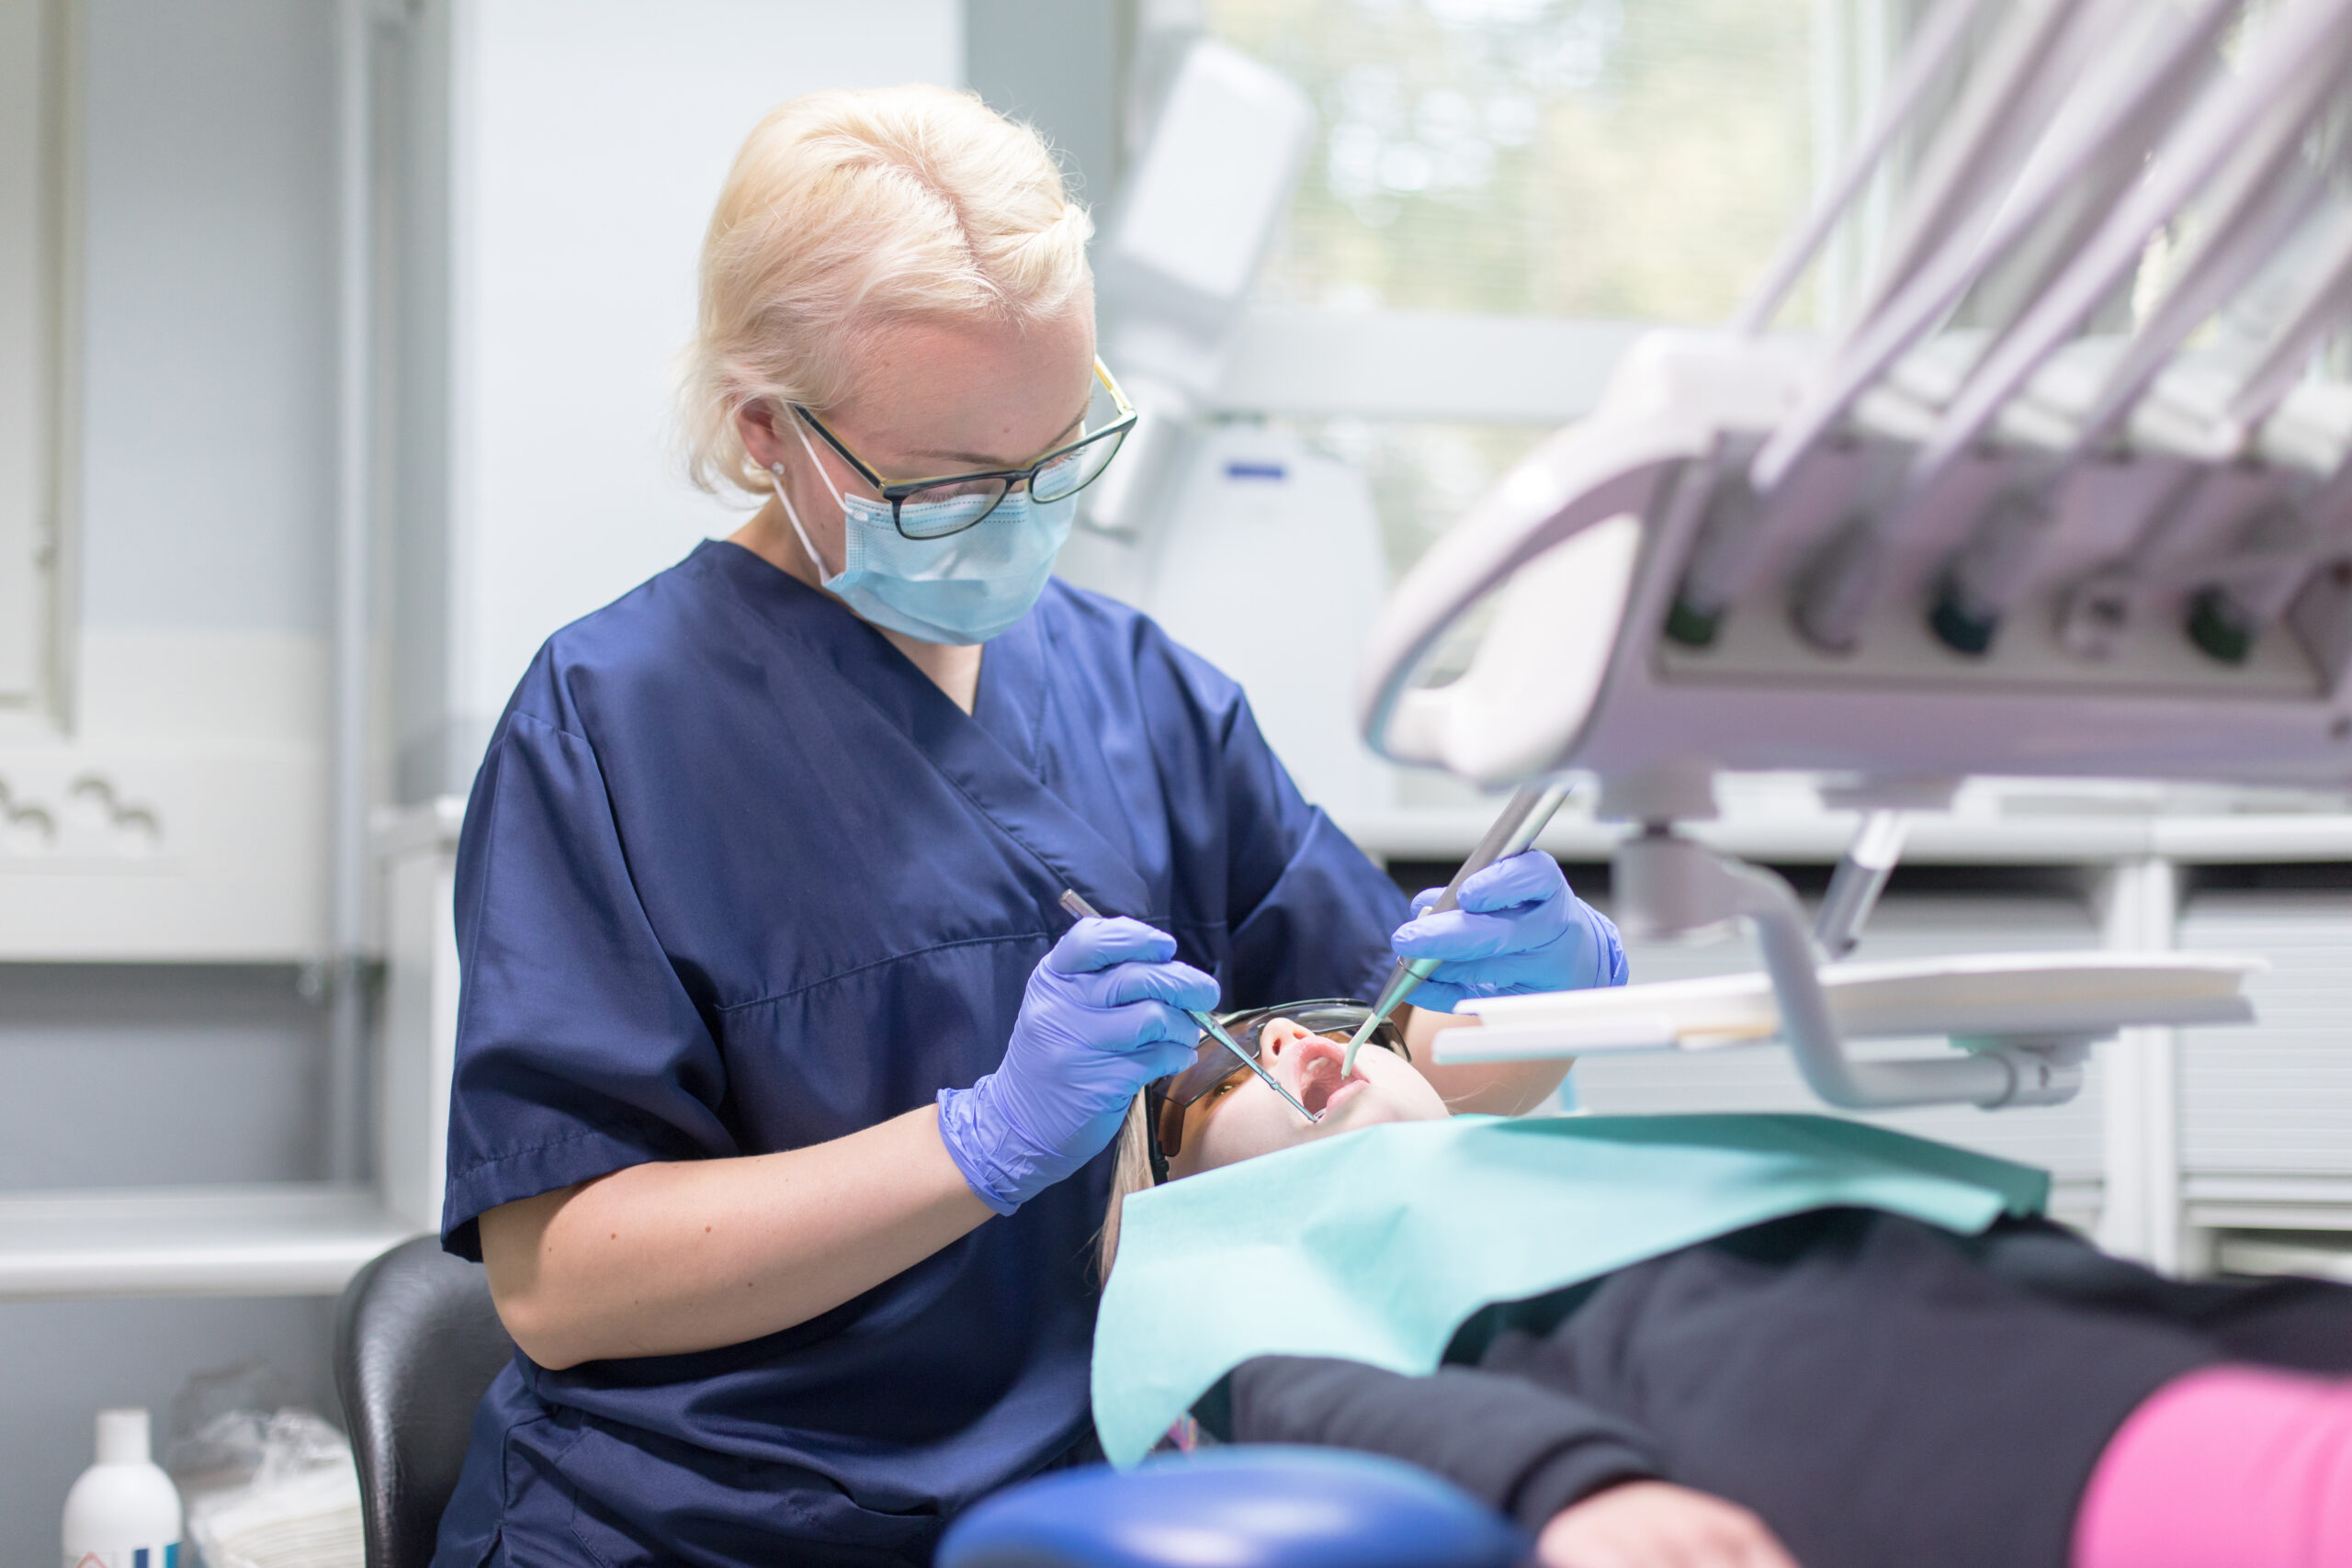 Suun terveydenhuollon muutot keskussairaalan hammashoitolaan alkavat 3. kesäkuuta – muutot aiheuttavat hoitojen ruuhkautumista  